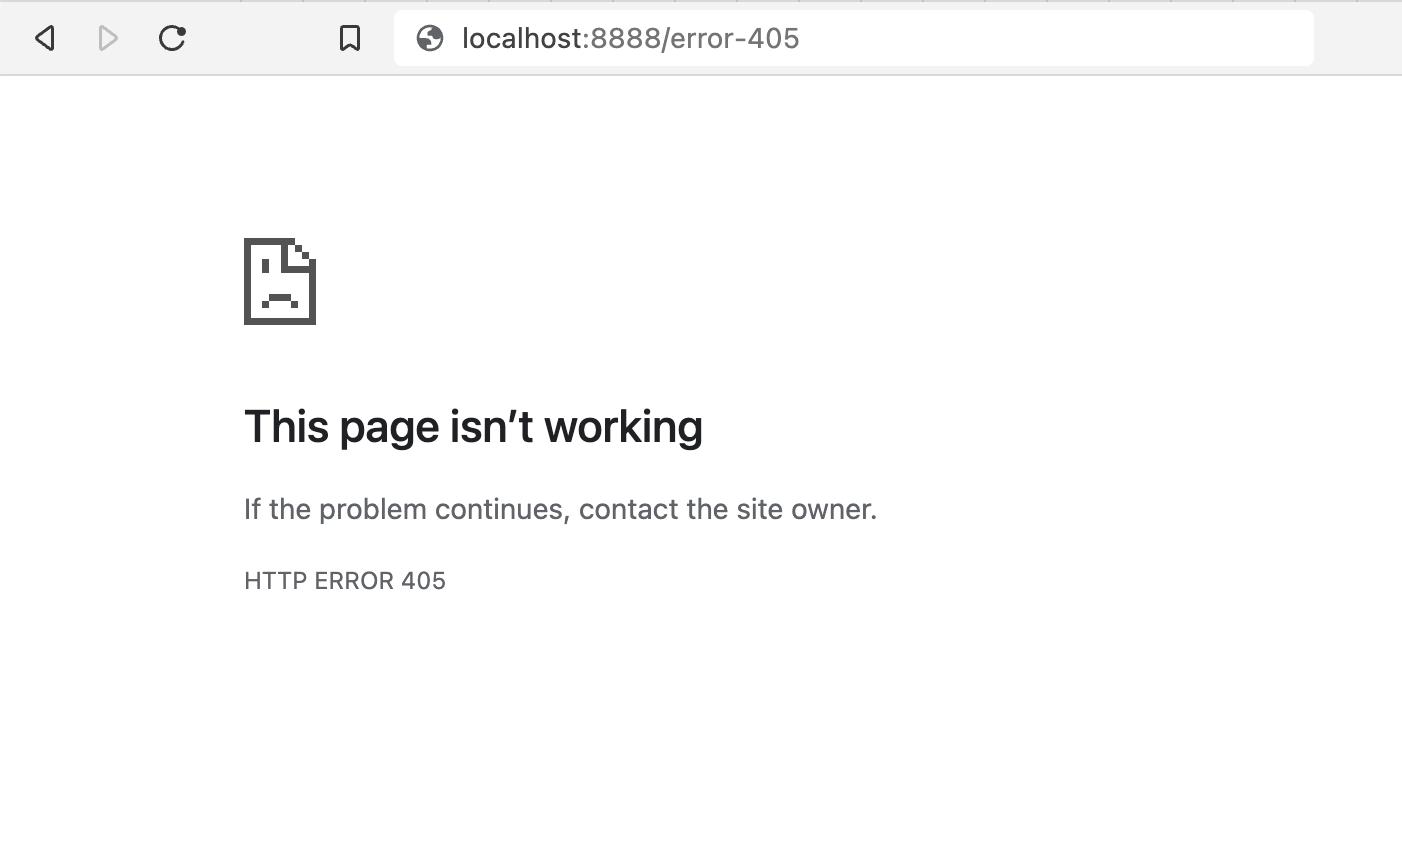 Aquesta pàgina no funciona, si el problema continua, contacteu amb el propietari del lloc. ERROR HTTP 405